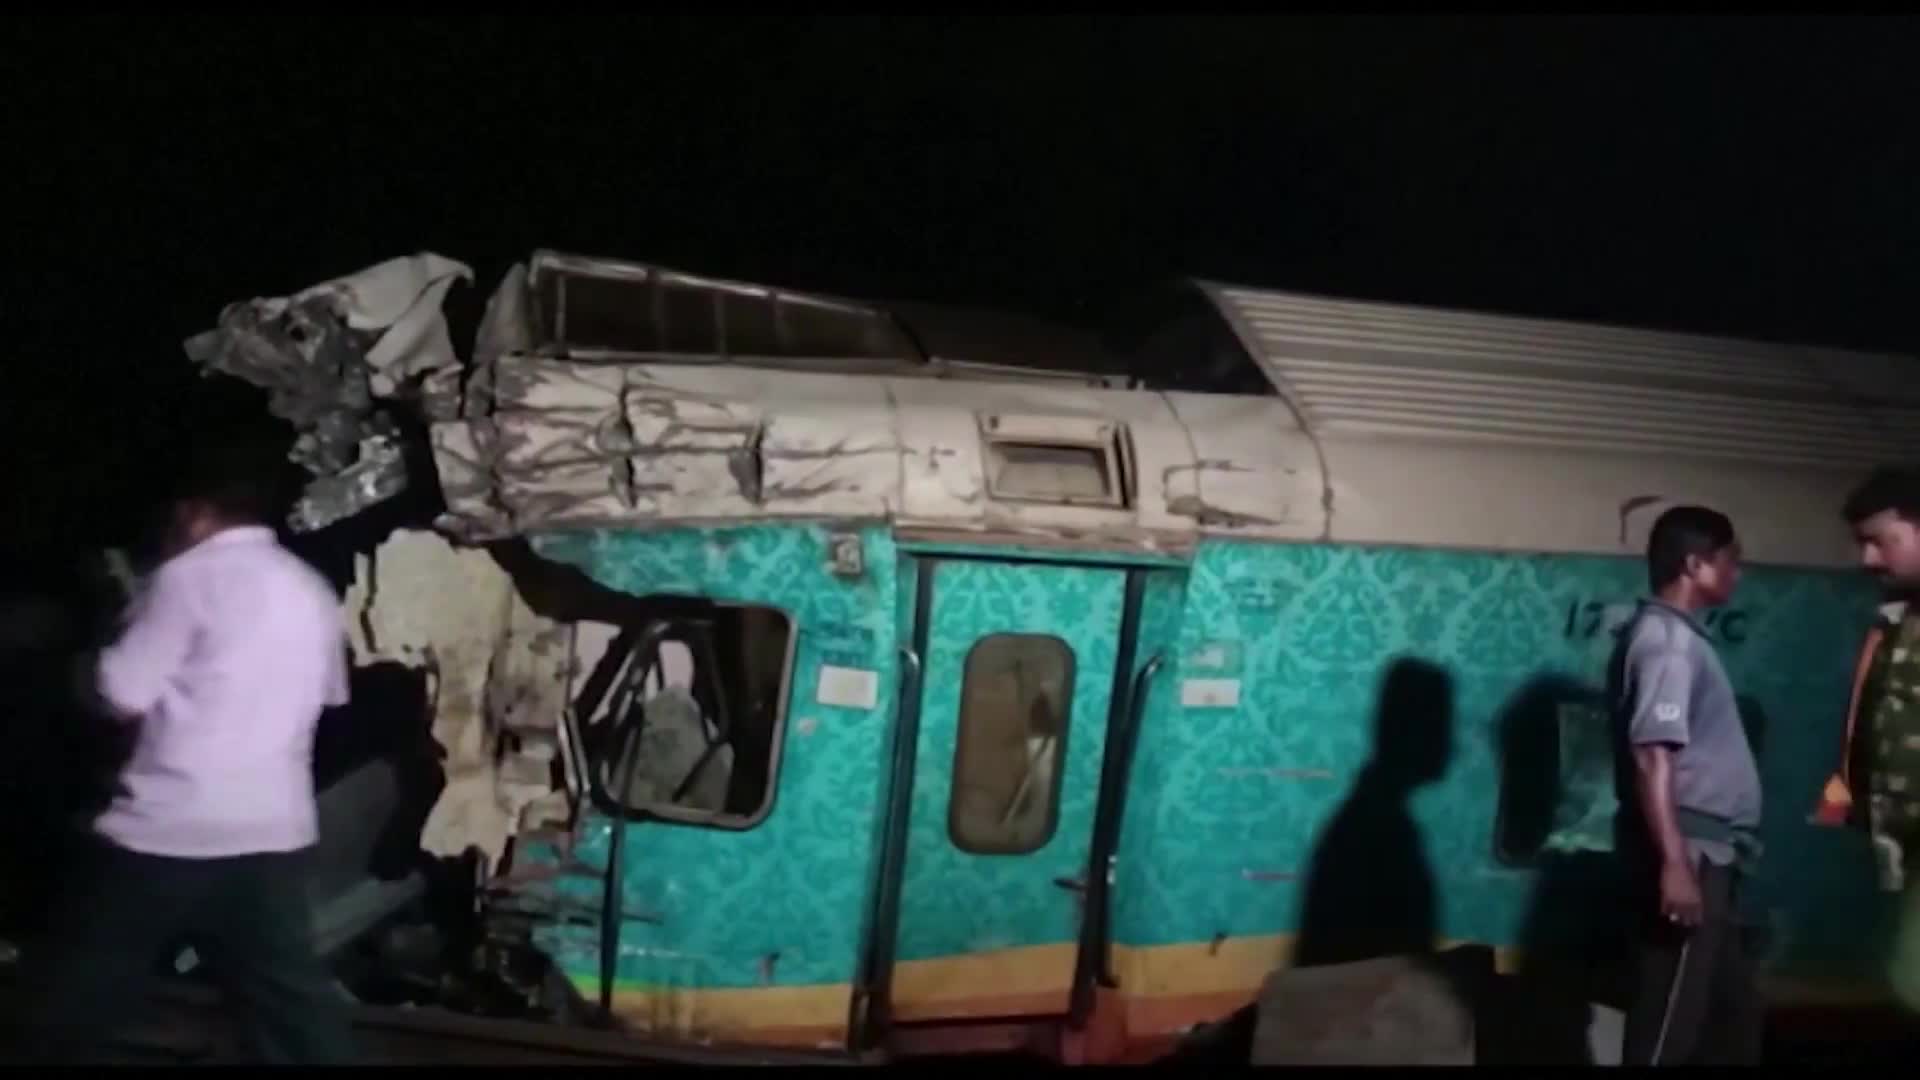 Два влака се сблъскаха в Индия, има 70 загинали и 500 ранени